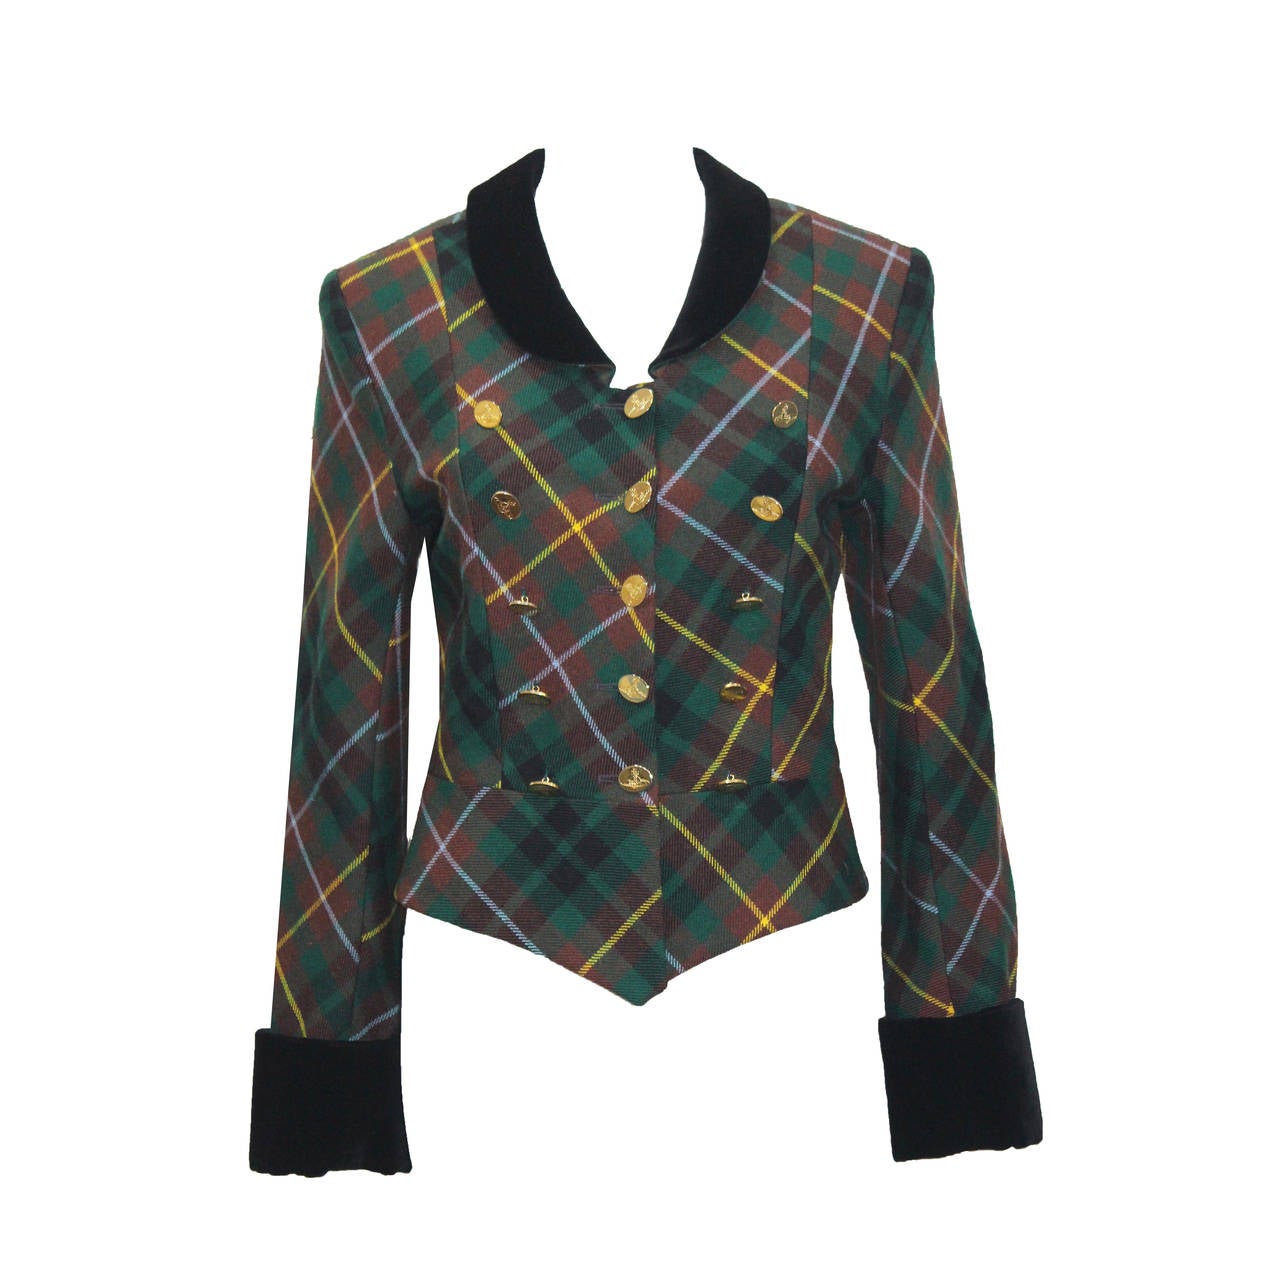 Rare Vivienne Westwood Tartan Plaid Wool and Velvet Jacket c. 1988